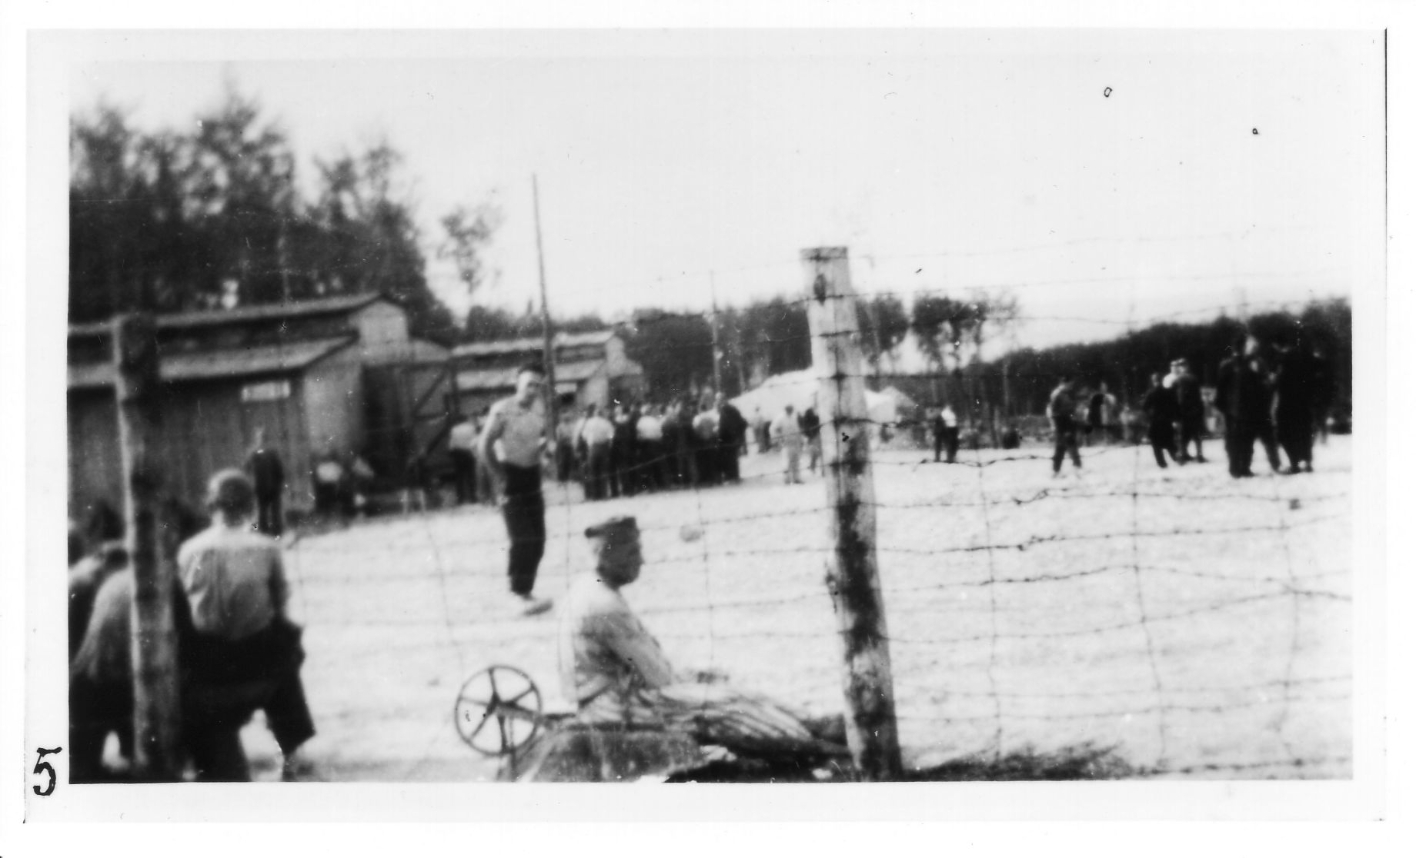 Häftlinge im Kleinen Lager, durch einen groben Stacheldrahtzaun fotografiert. Links die Pferdestallbaracken 62 und 63. Mit dem Rücken zum Zaun sitzen einige Häftlinge. Im Hintergrund ist das im Mai 1944 errichtete Zeltlager zu erkennen. Im Hintergrund sind Gruppenansammlungen von Häftlingen zu sehen.